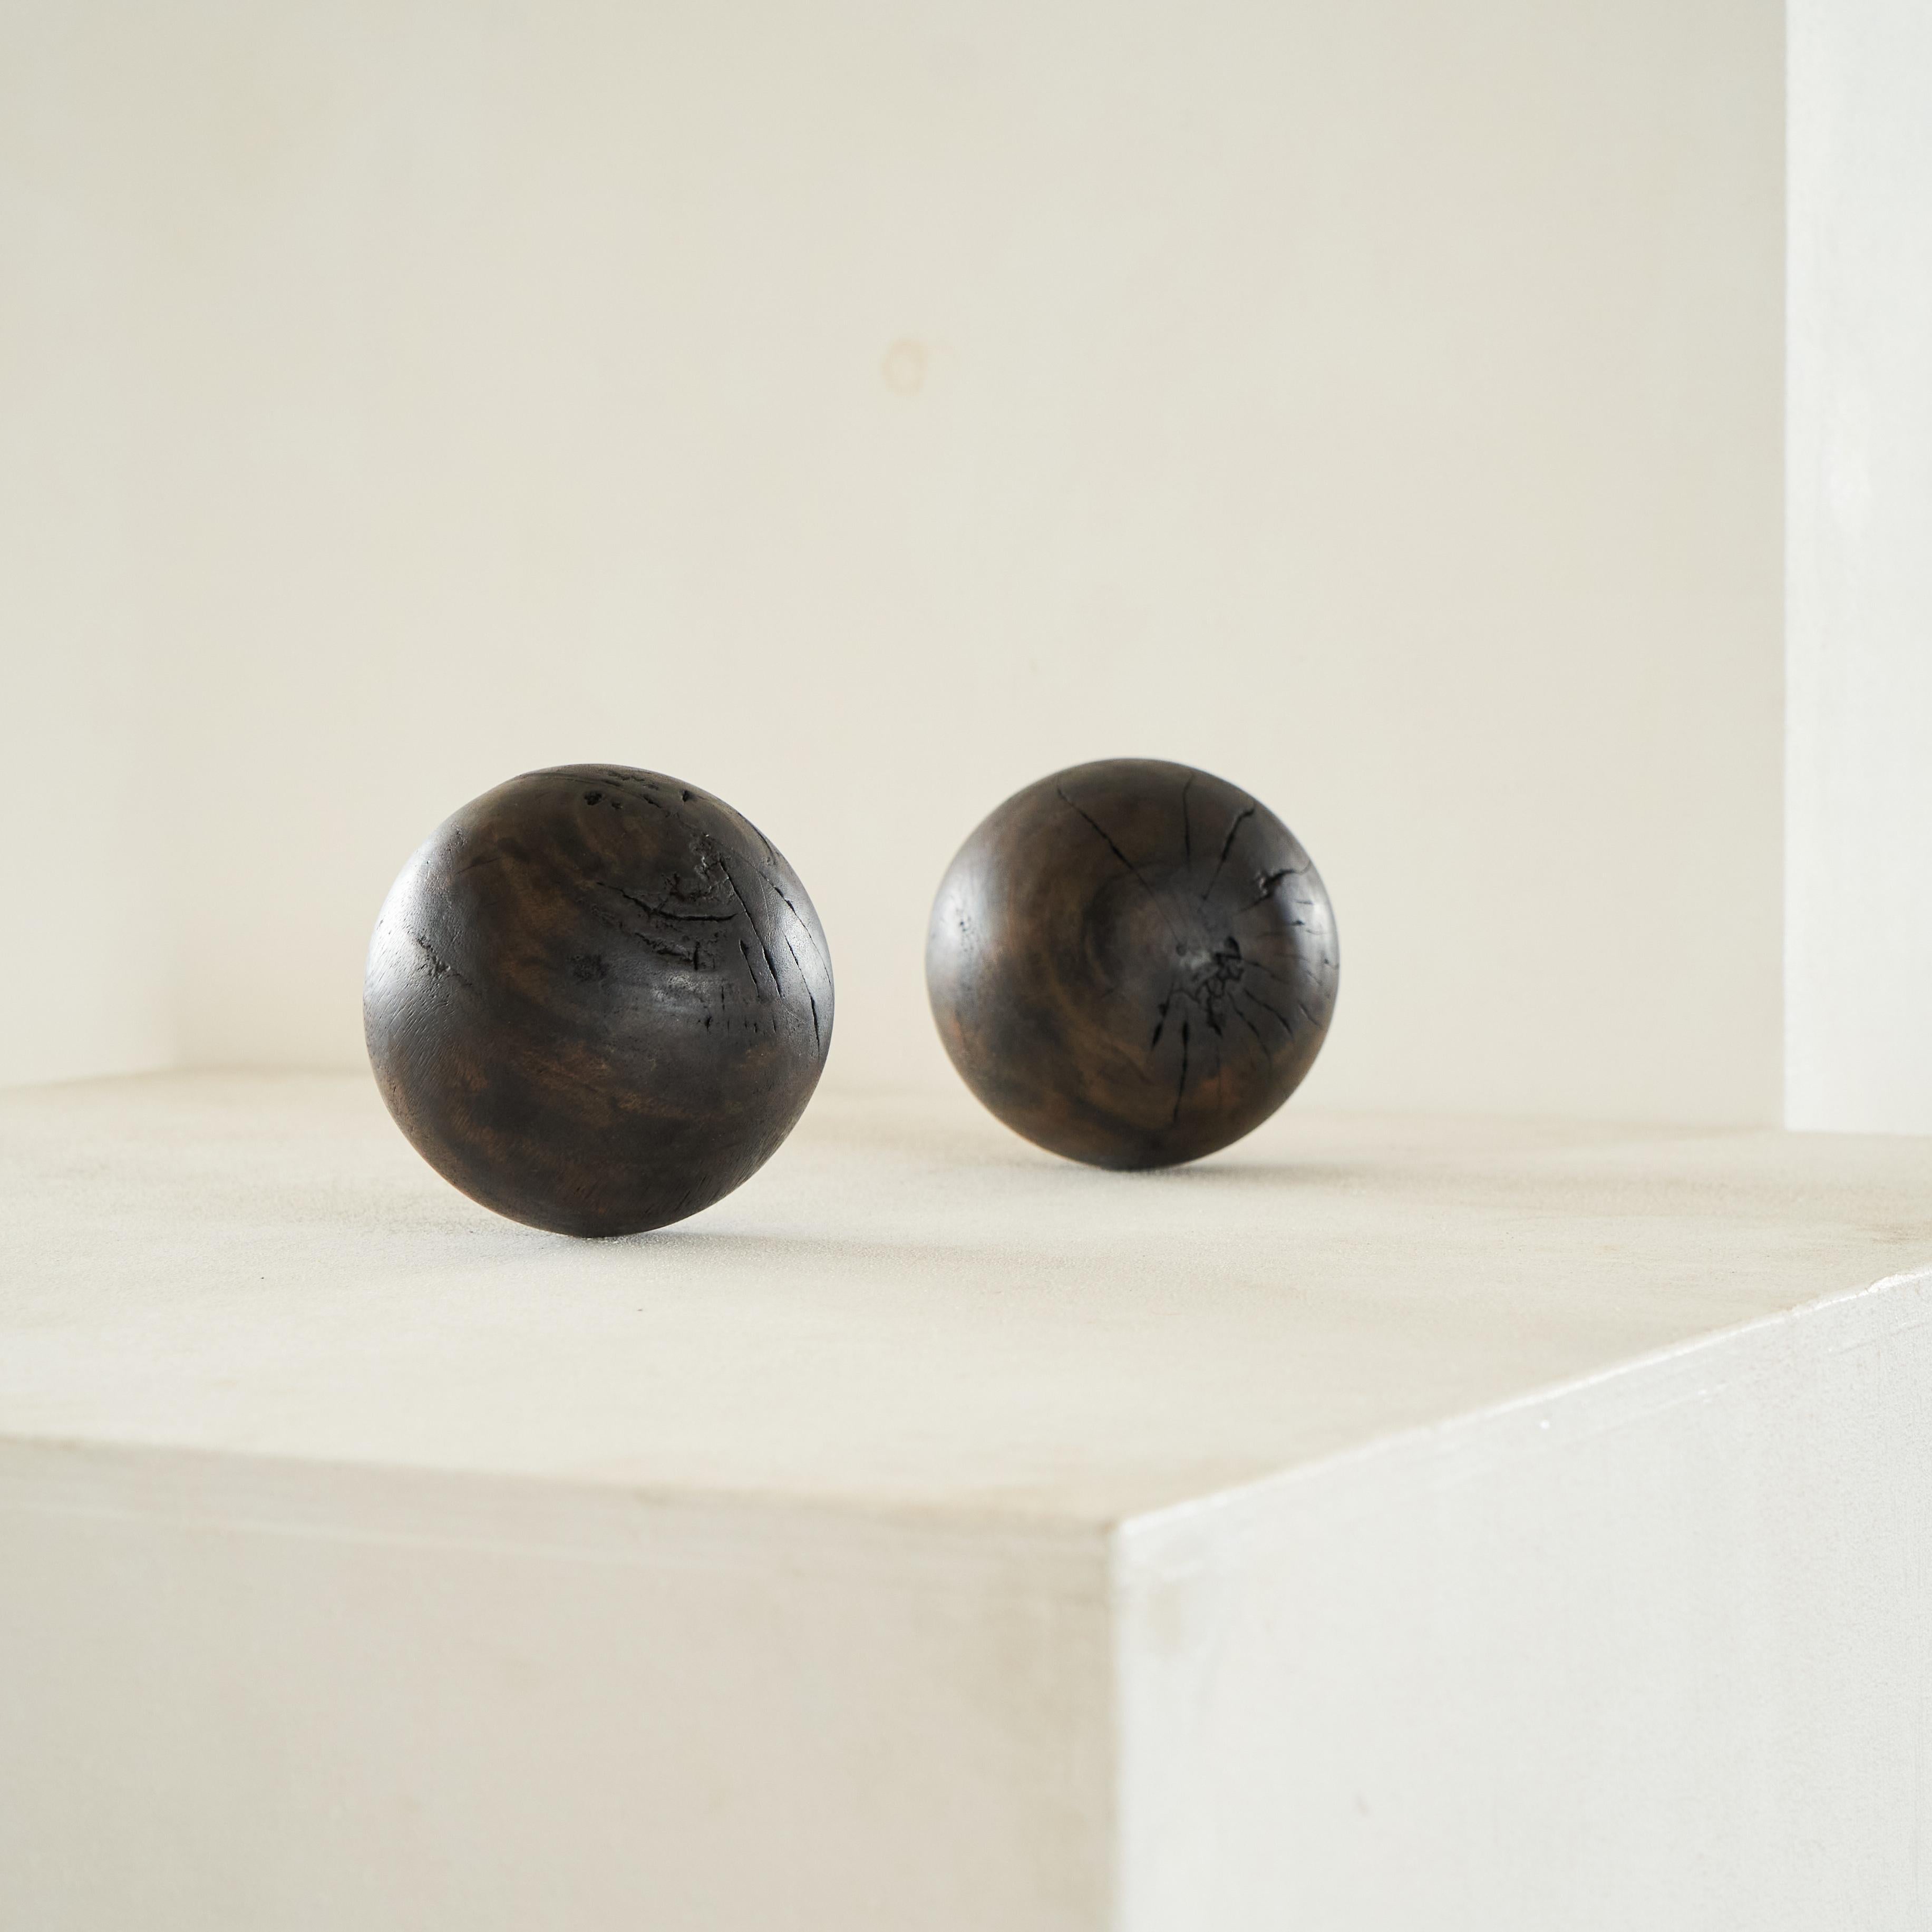 Paire de boules décoratives Wabi Sabi en bois.

Merveilleuse paire de boules en bois antiques très décoratives. Fabriquée à la main et présentant un véritable aspect wabi sabi, cette paire serait parfaite sur une table ou un buffet en guise de